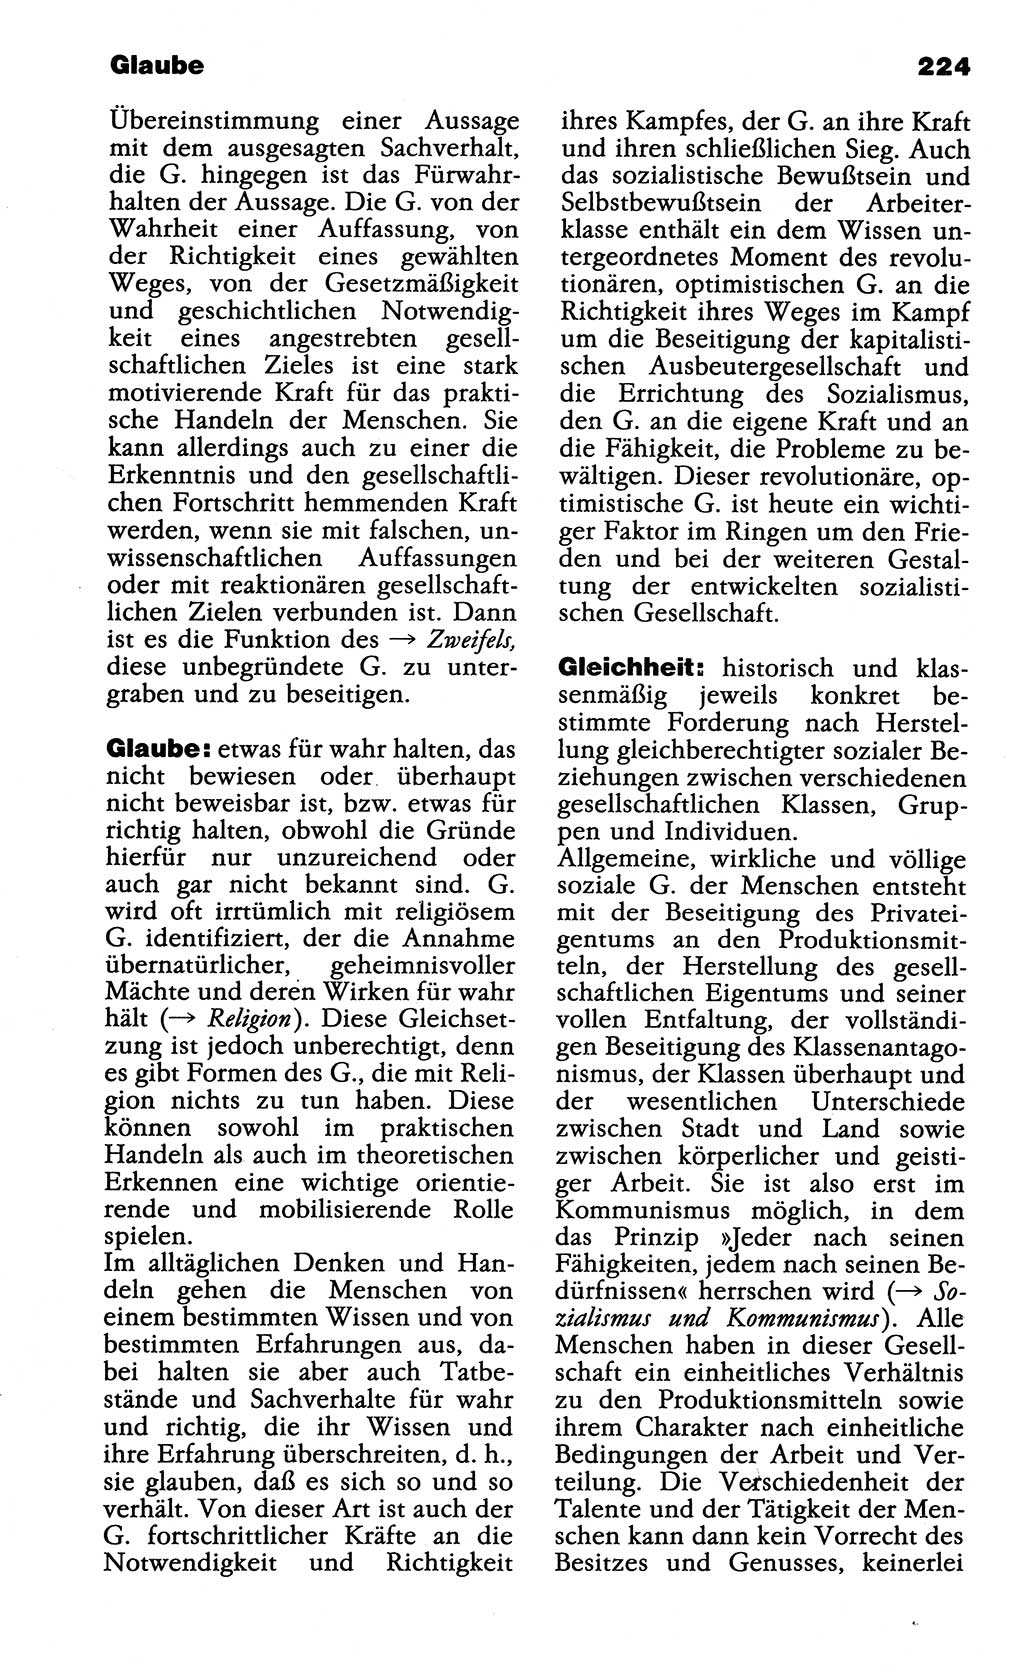 Wörterbuch der marxistisch-leninistischen Philosophie [Deutsche Demokratische Republik (DDR)] 1985, Seite 224 (Wb. ML Phil. DDR 1985, S. 224)